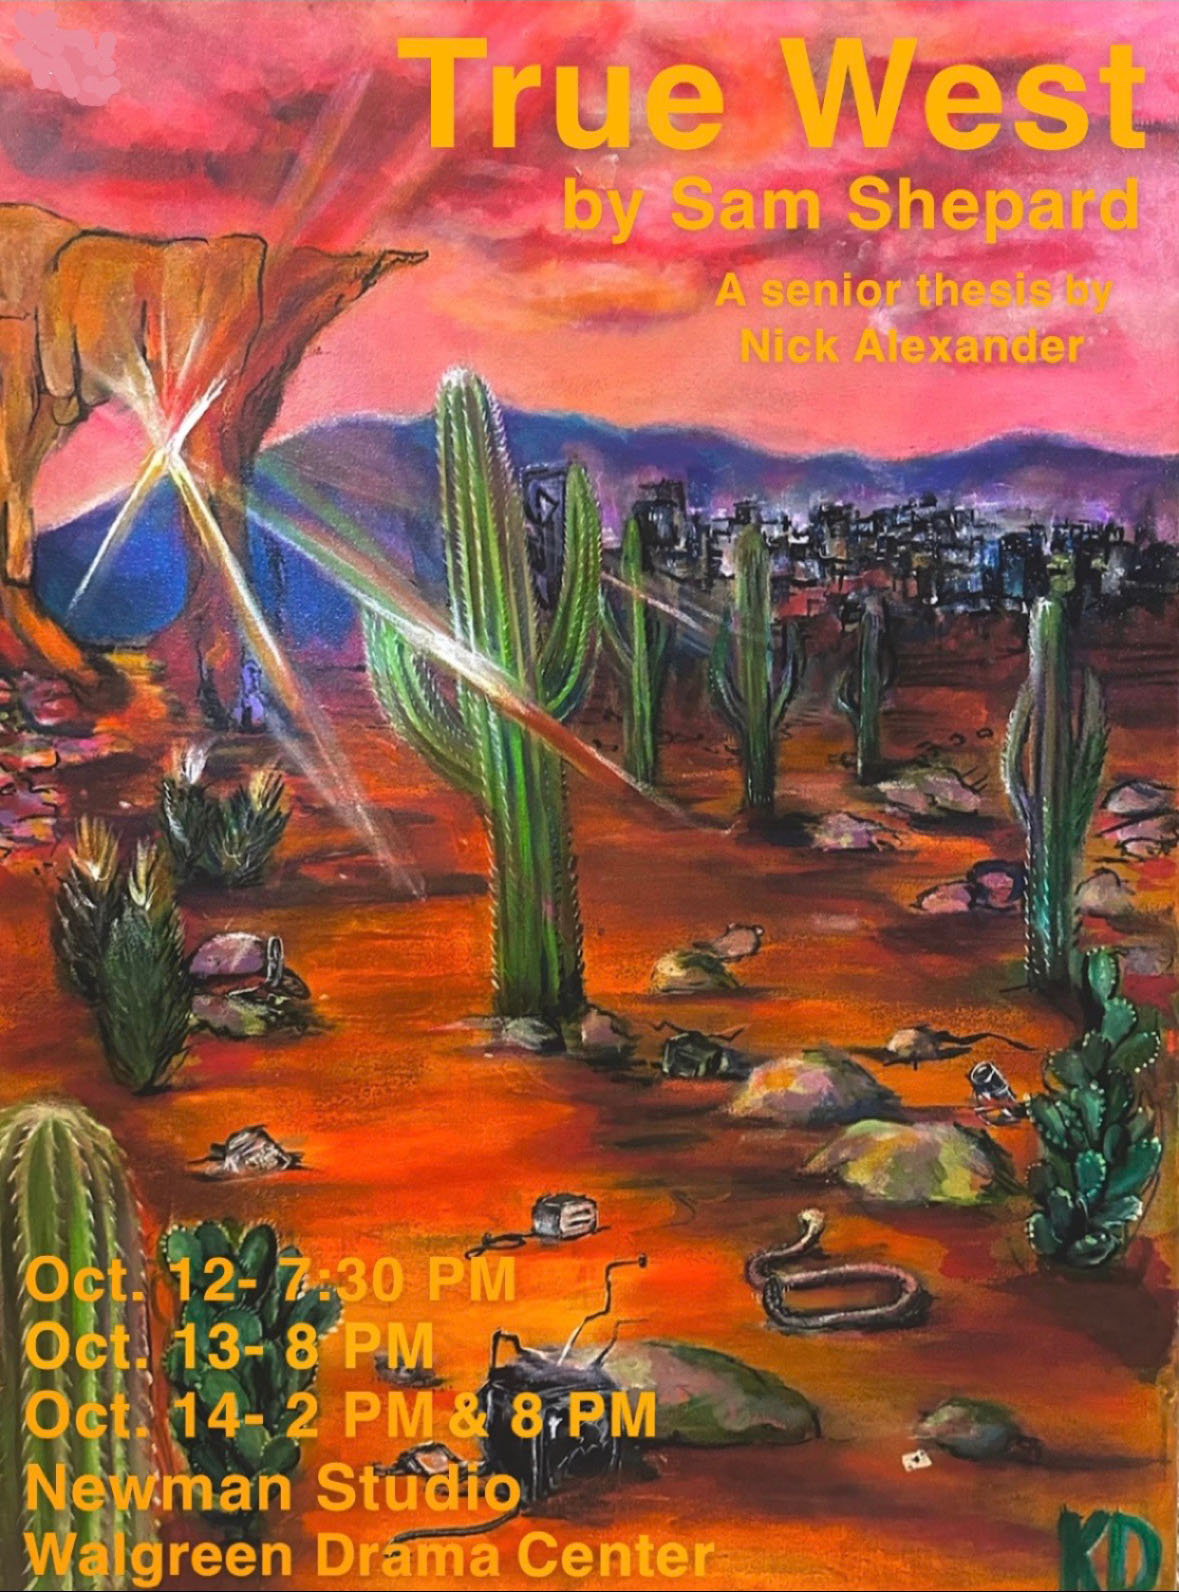 Poster for "True West" performances, with vibrant desert scene artwork